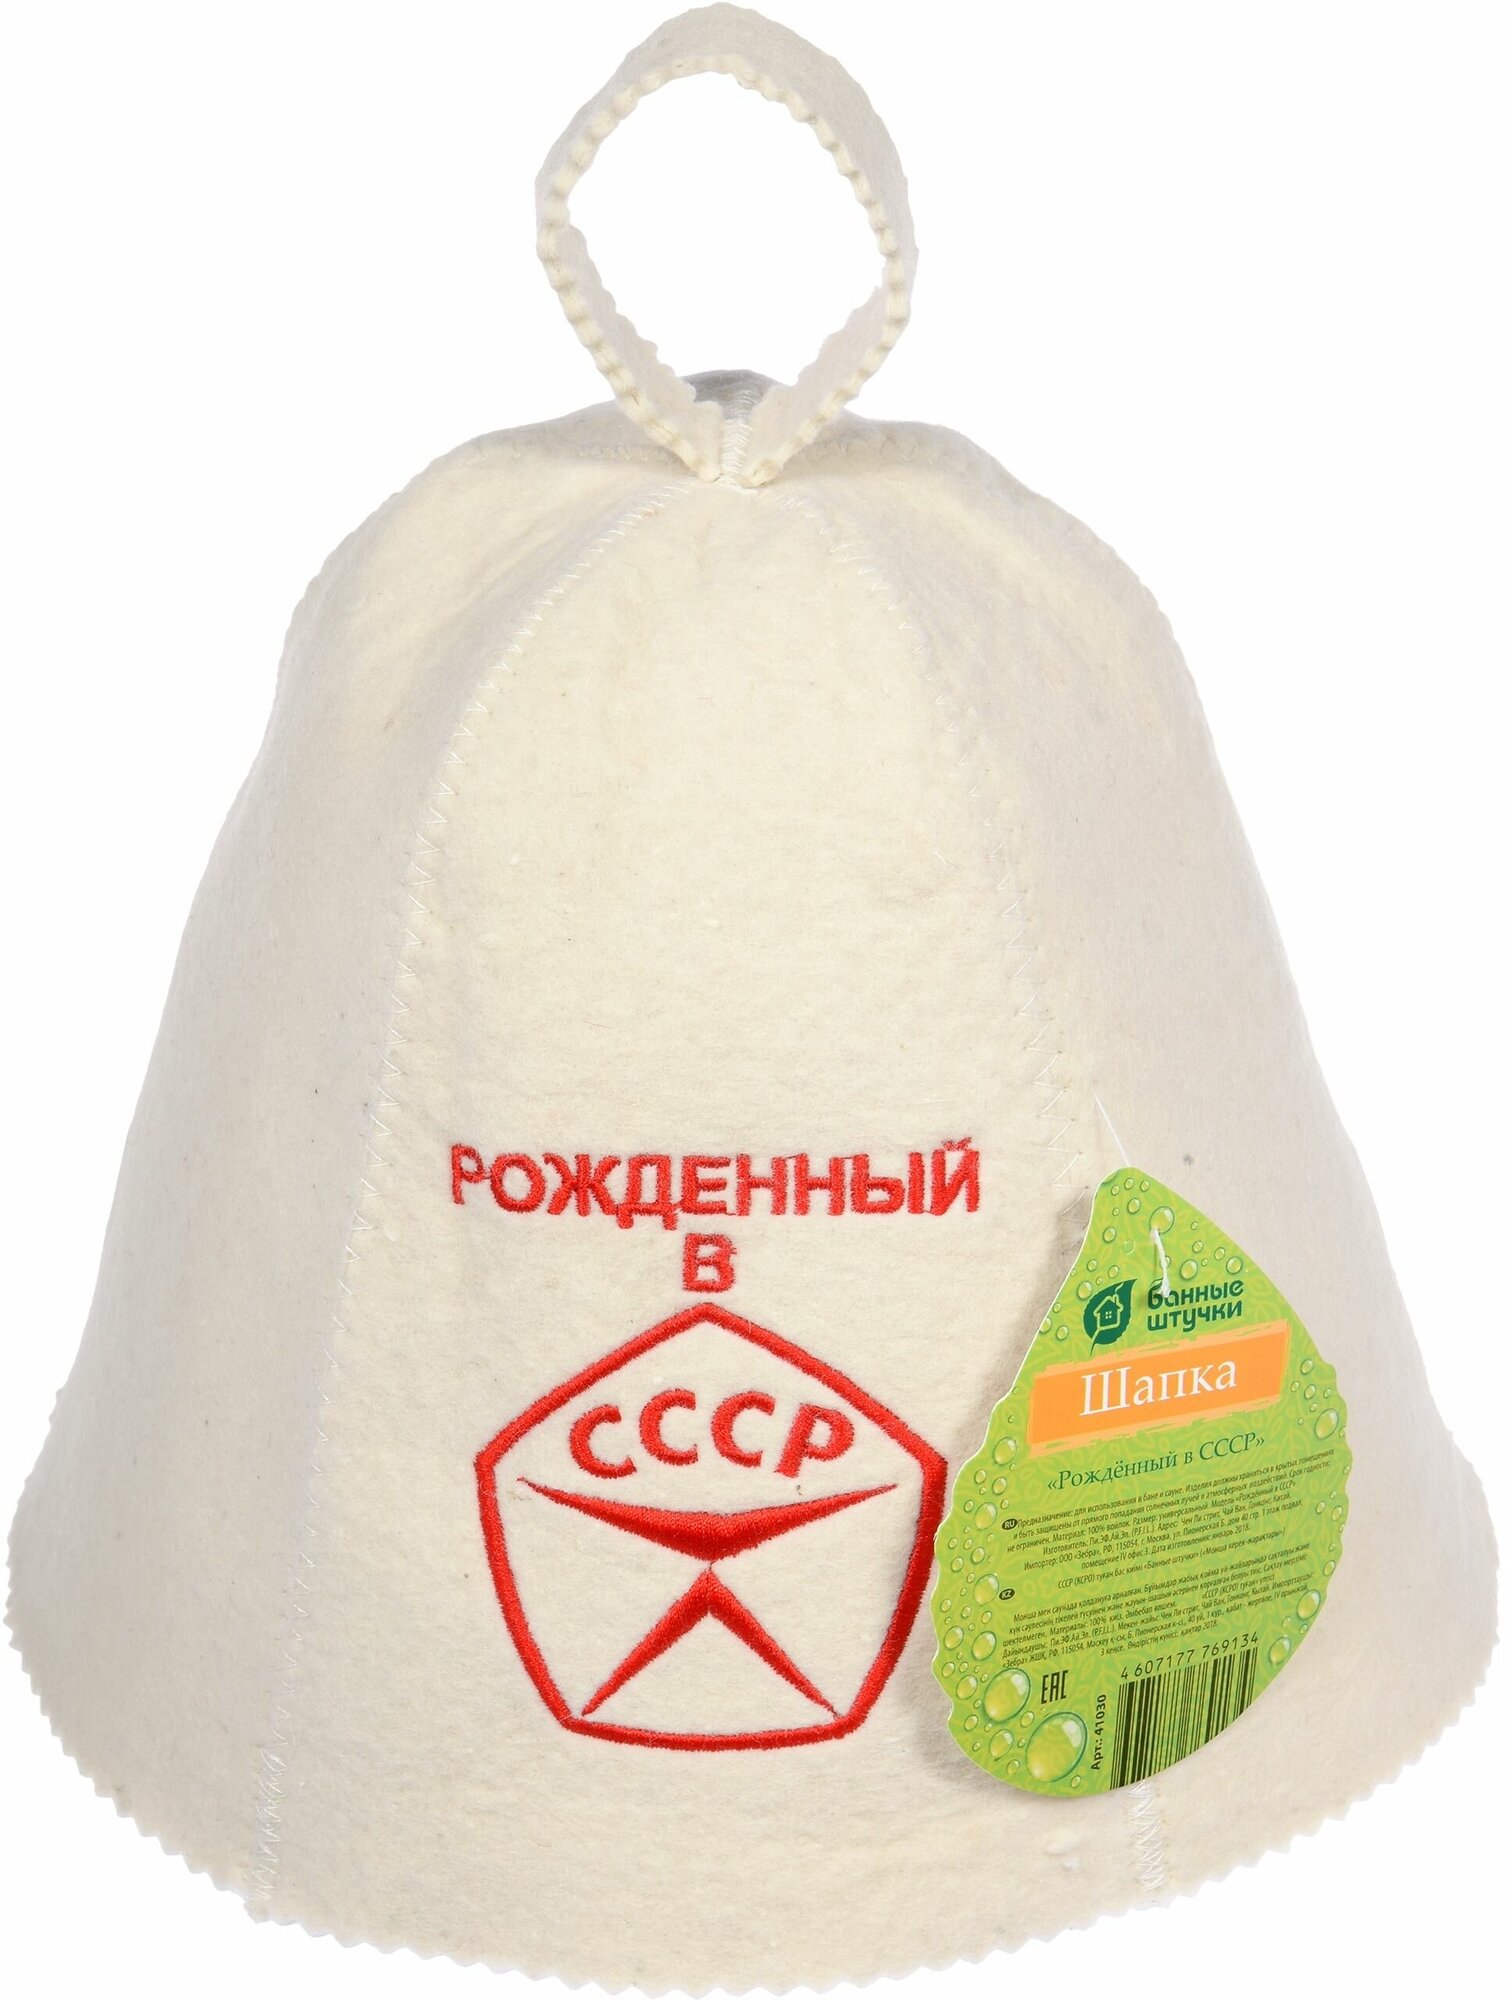 Шапка для бани и сауны с вышивкой "Рождённый в СССР" "Банные штучки", войлок